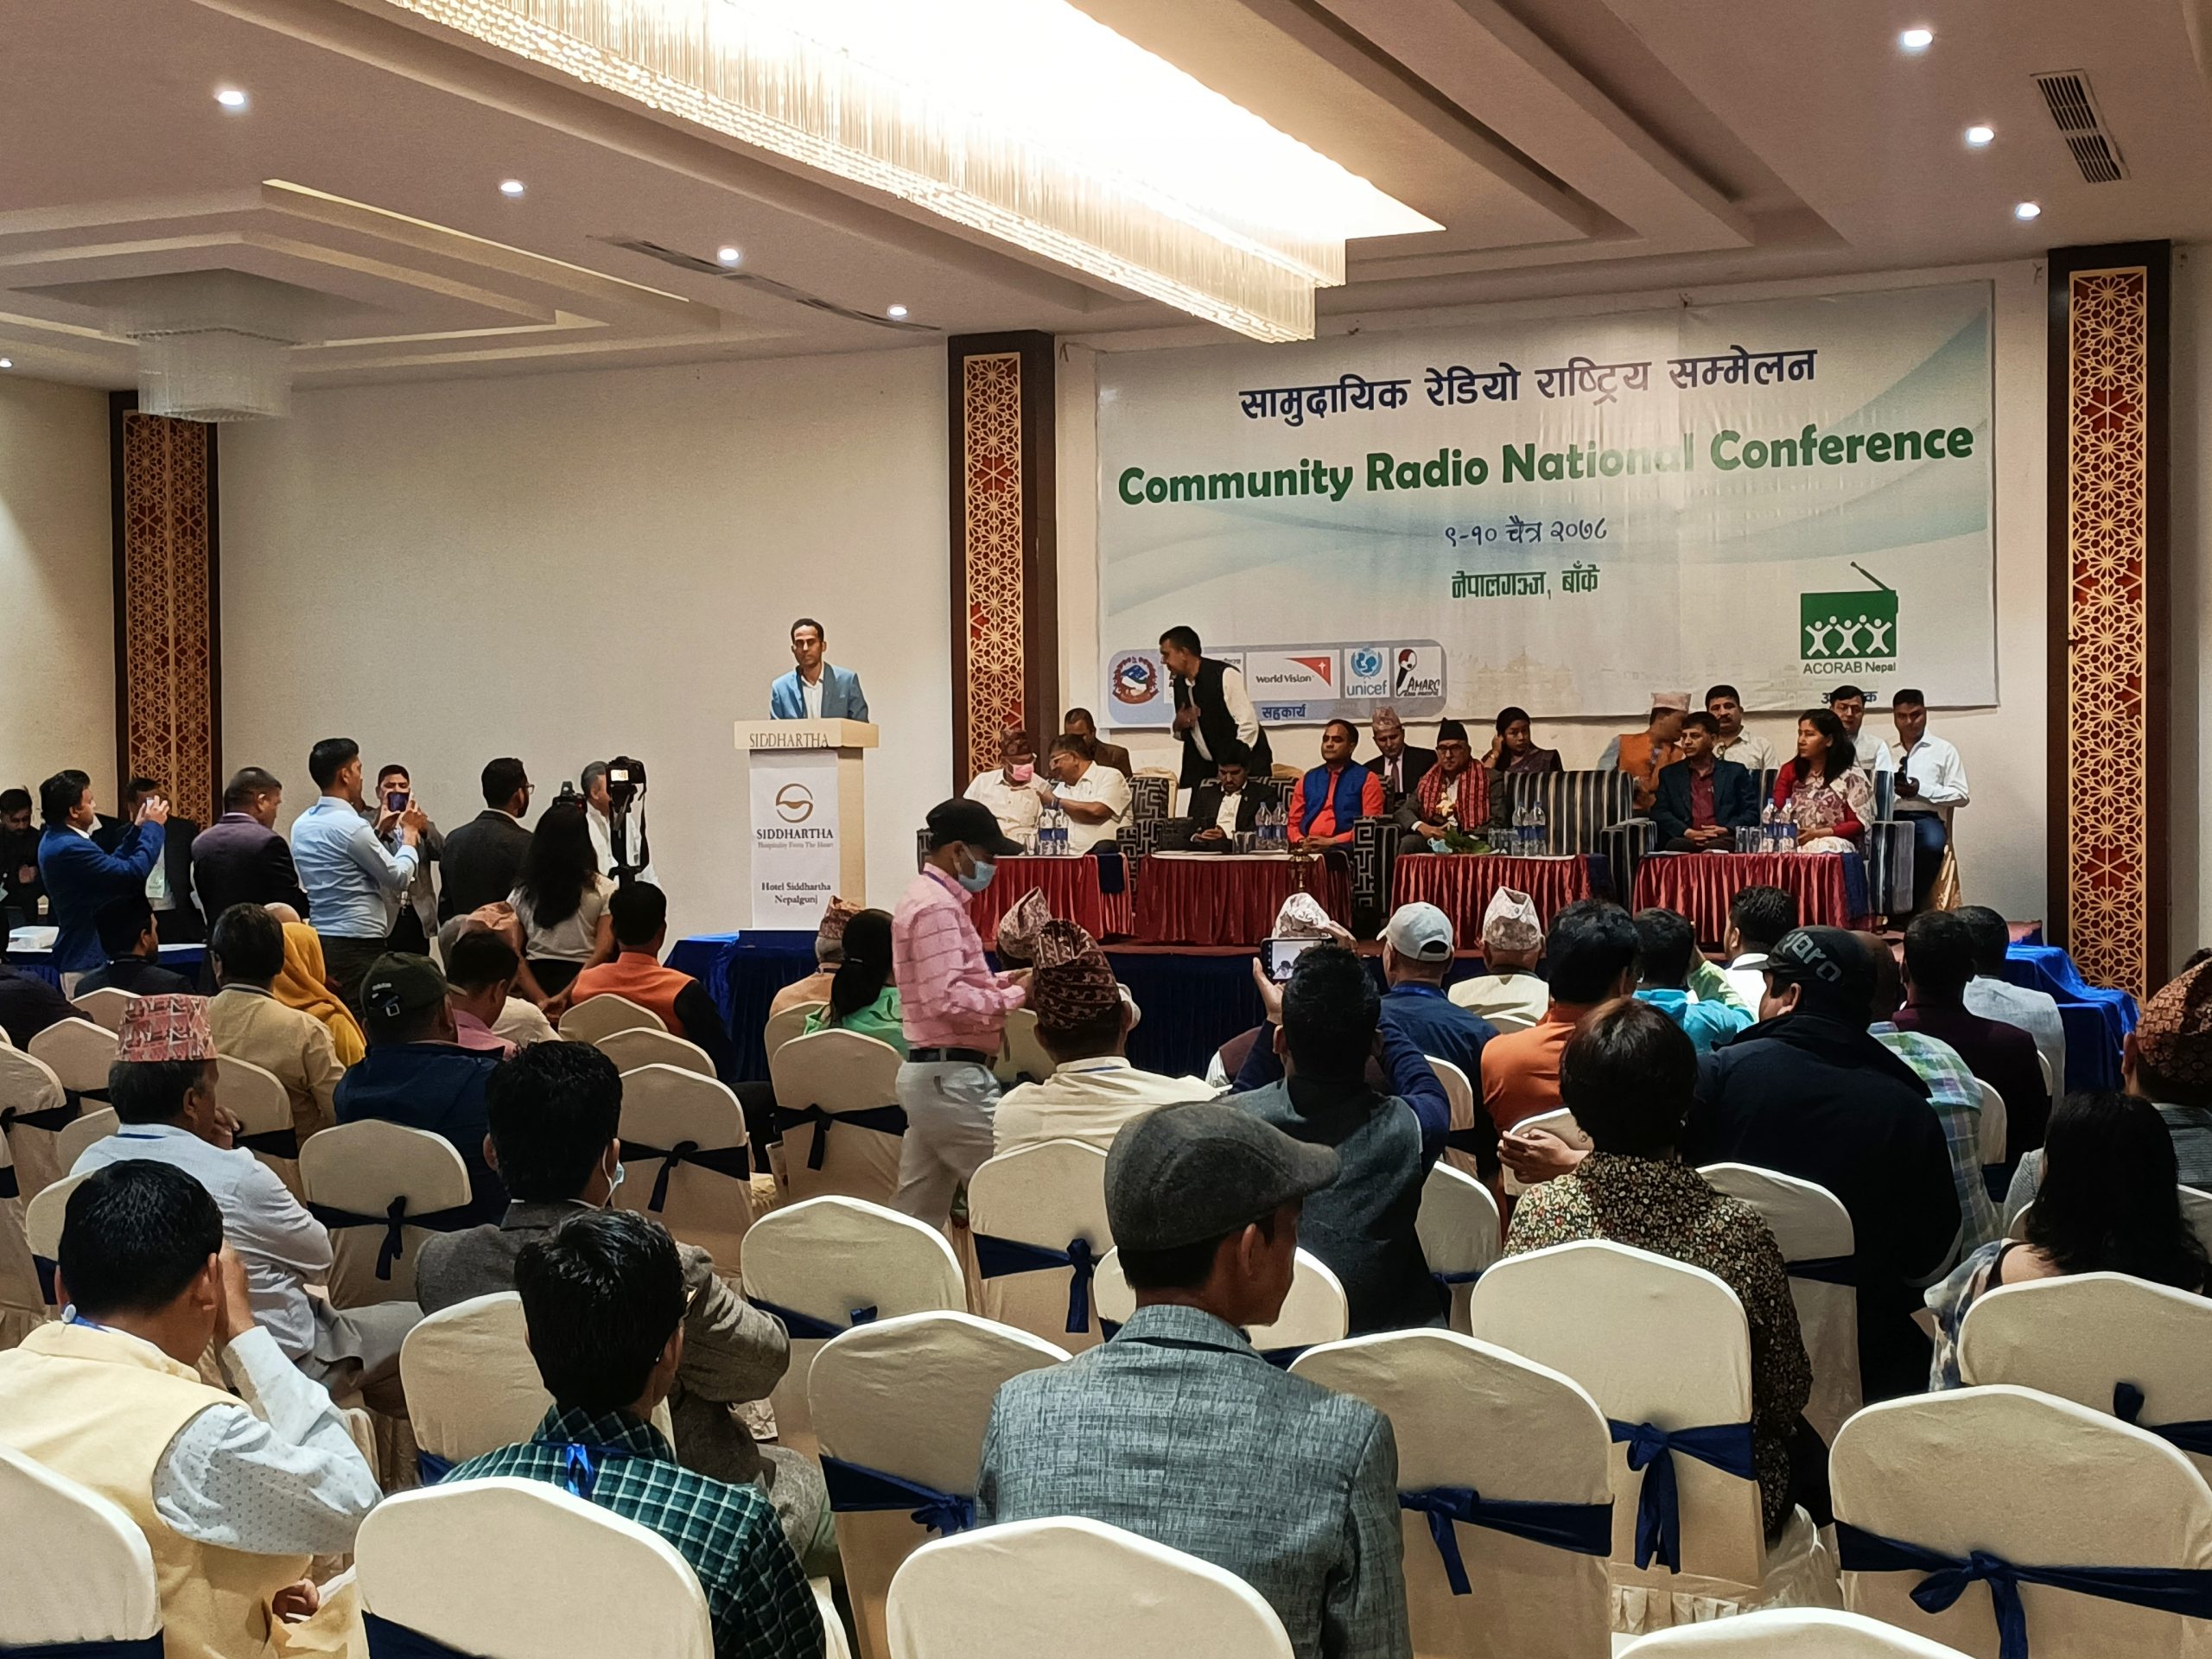 सामुदायिक रेडियो प्रशारण संघ (ACORAB ) को नेपालगञ्जमा राष्ट्रिय सम्मेलन